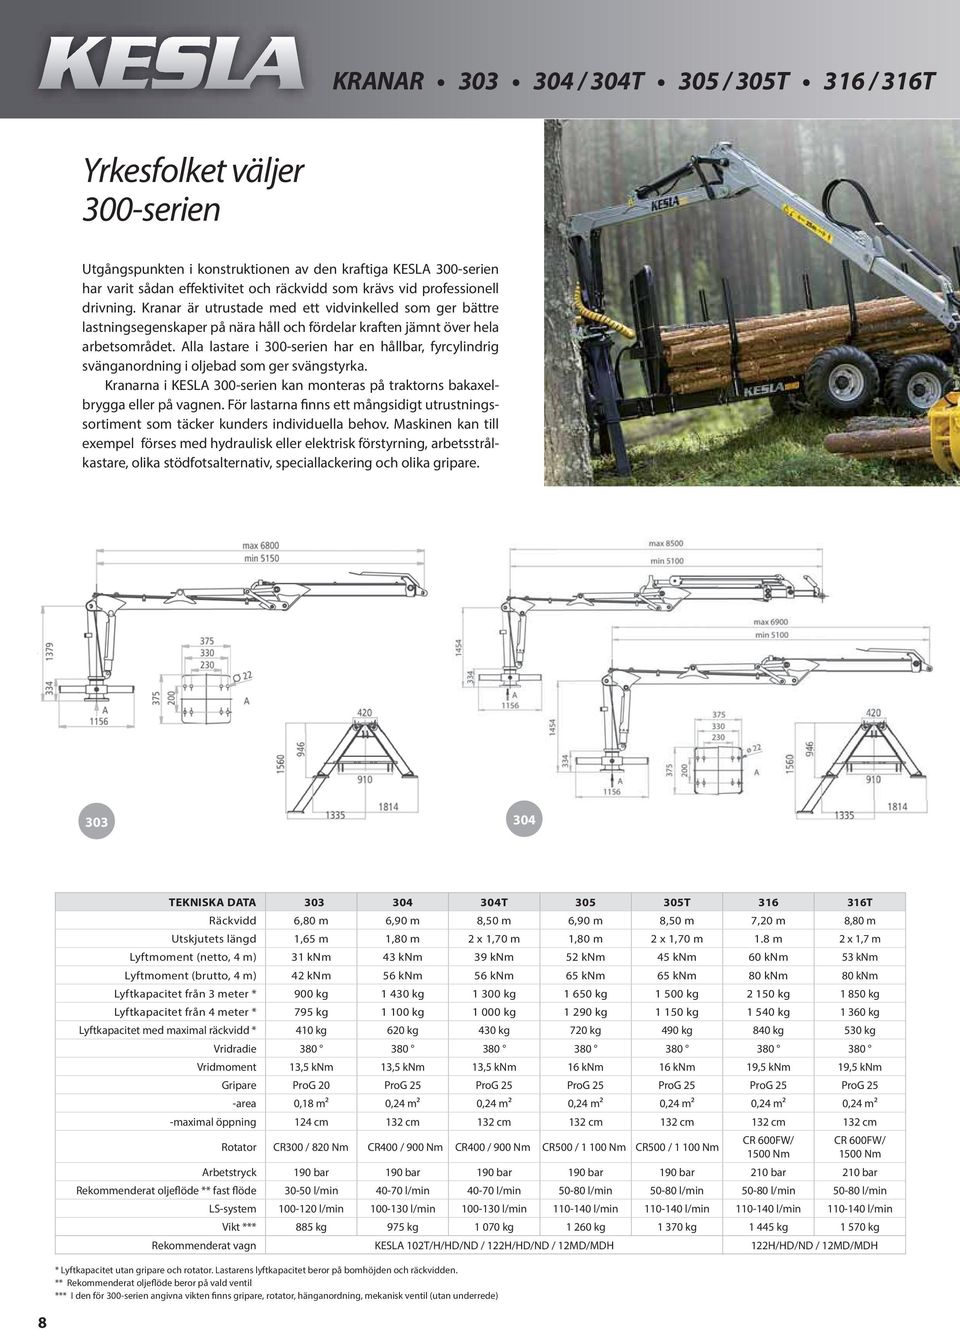 Alla lastare i 300-serien har en hållbar, fyrcylindrig svänganordning i oljebad som ger svängstyrka. Kranarna i KESLA 300-serien kan monteras på traktorns bakaxelbrygga eller på vagnen.